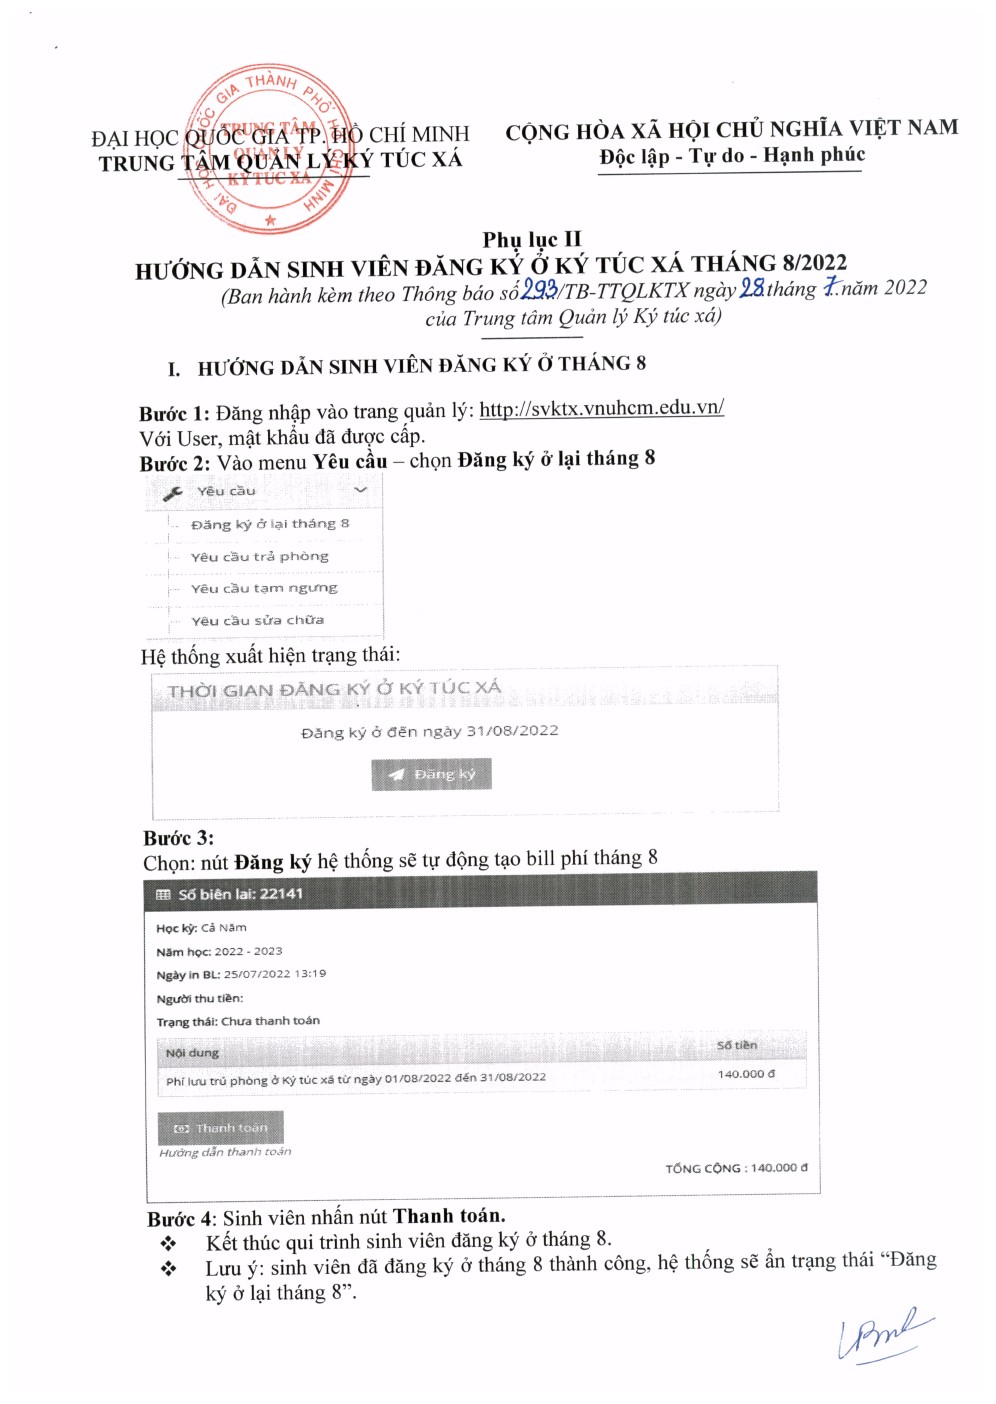 293/TB-TTQLKTX về việc đăng ký ở Ký túc xá Đại học Quốc Gia Tp. Hồ Chí Minh tháng 08/2022 6